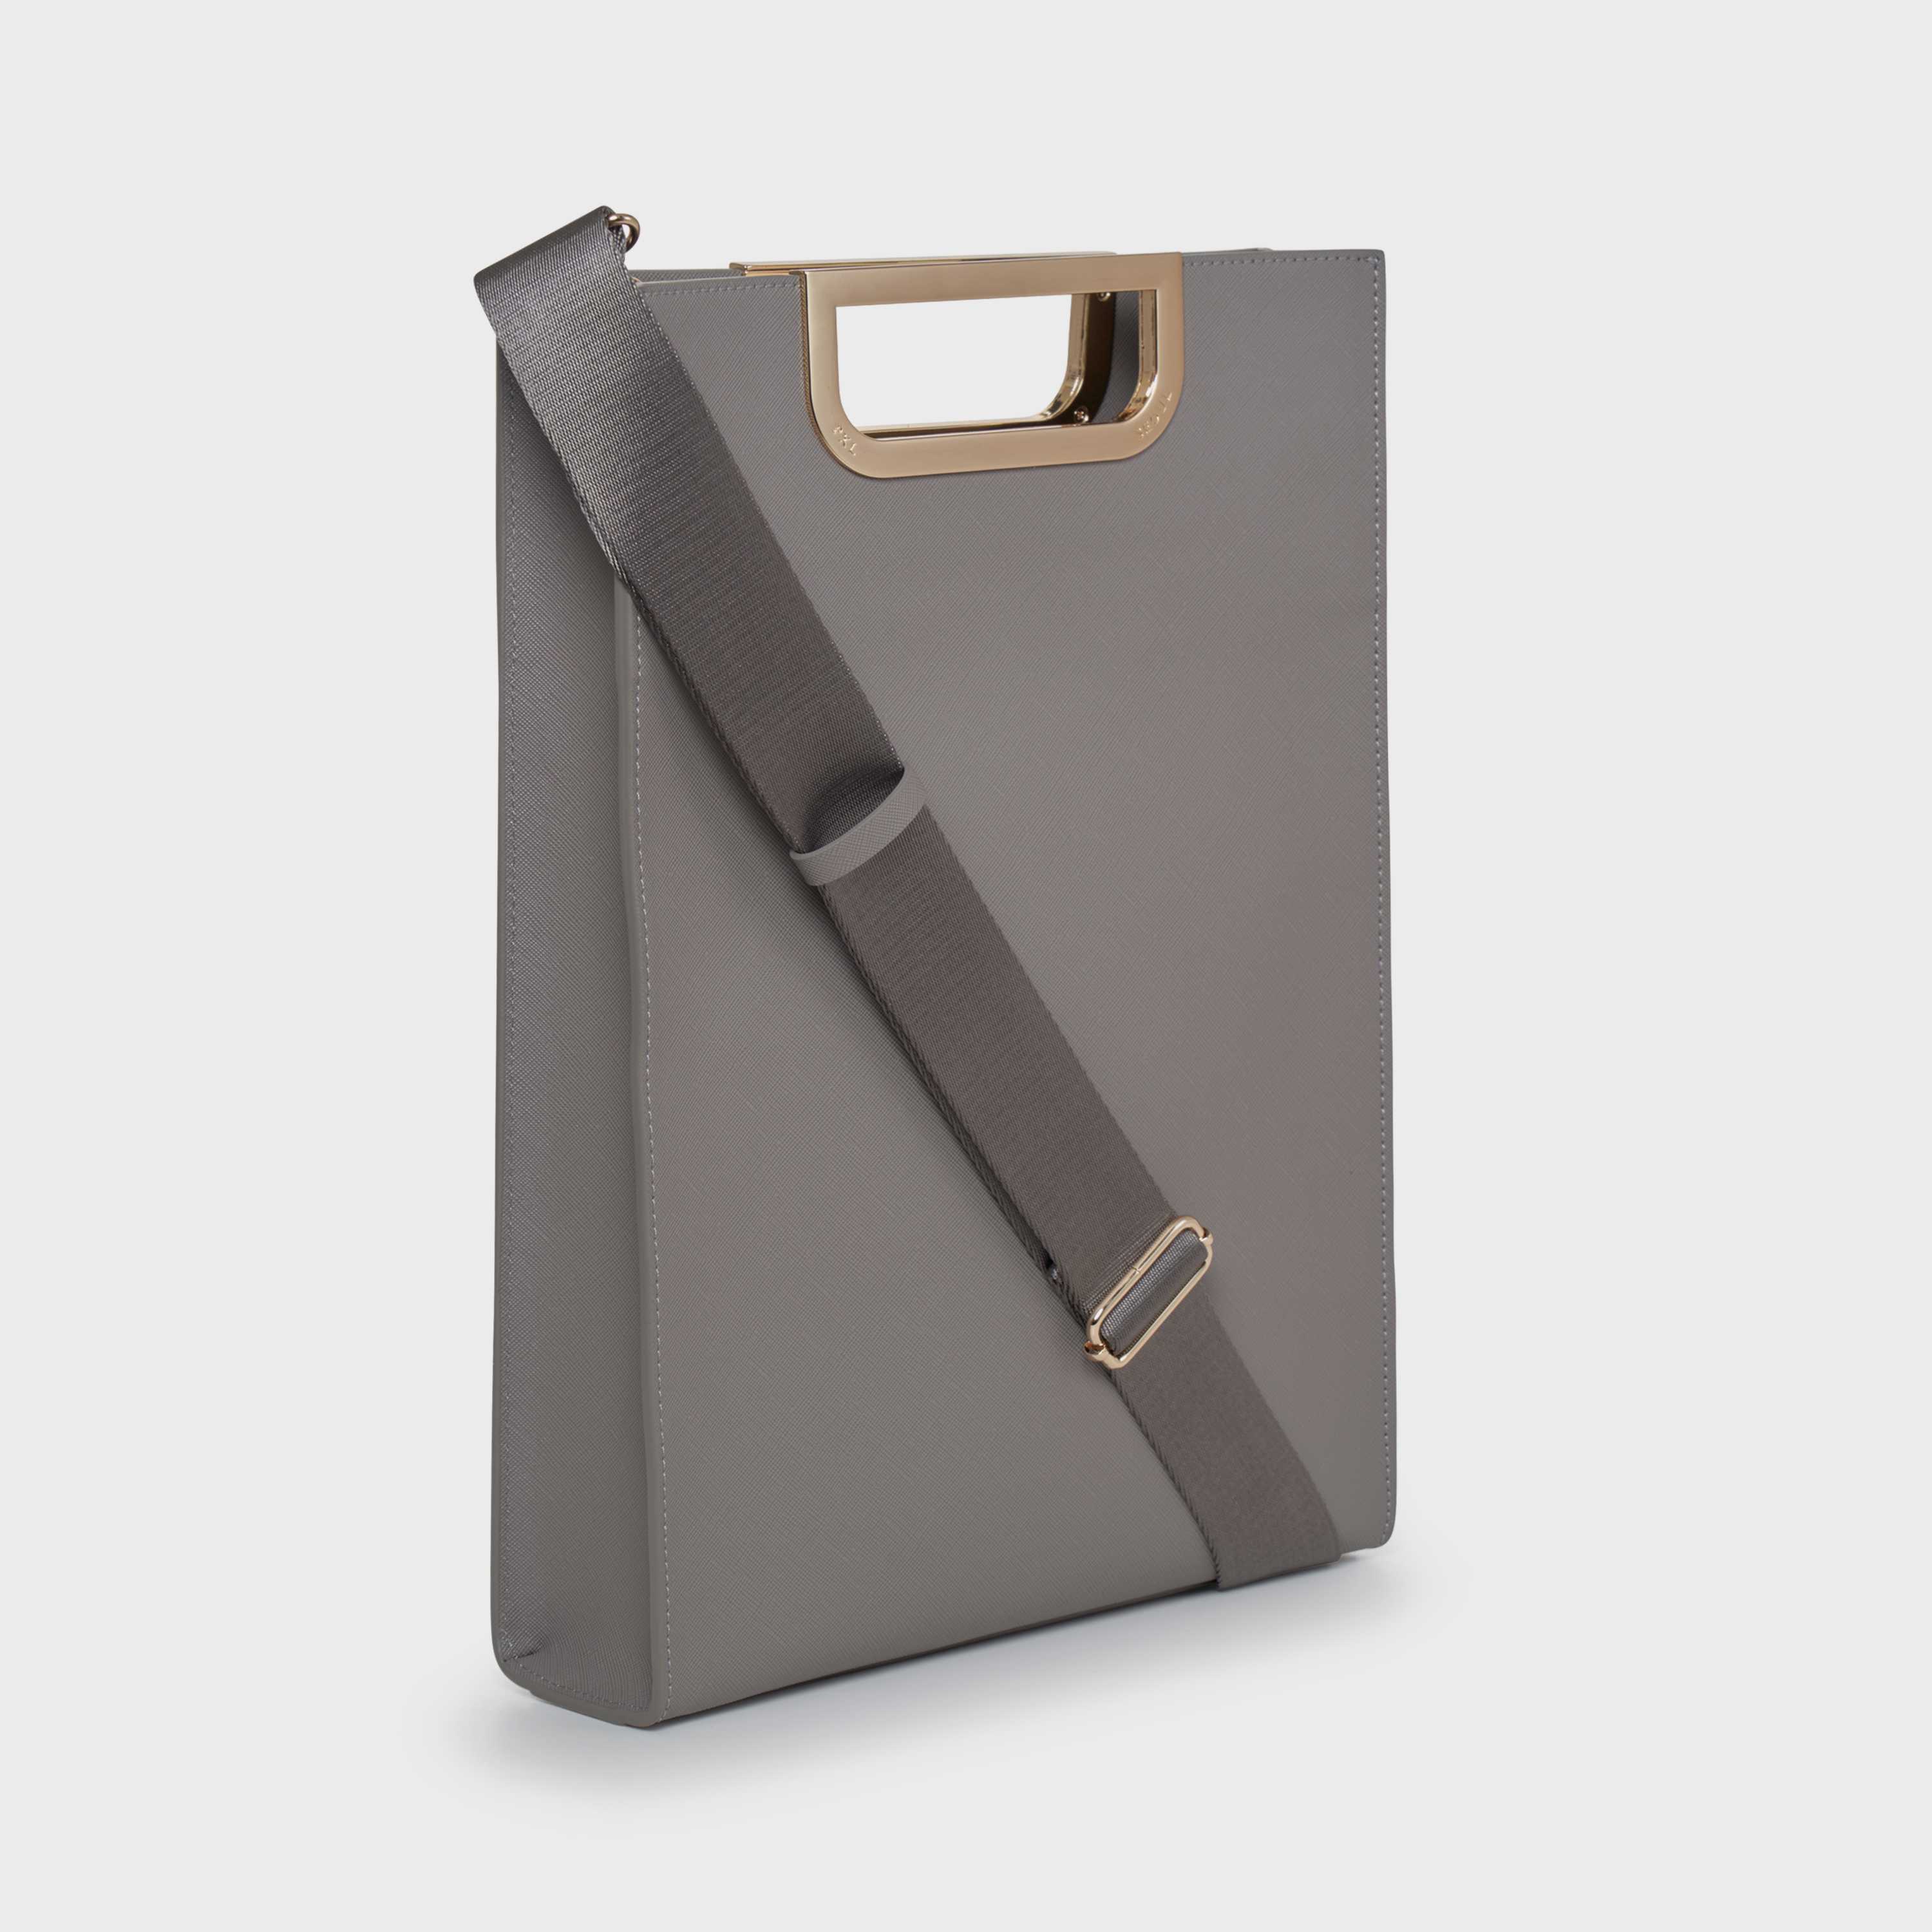 Metalgrip slim briefcase (Gray/Gold)